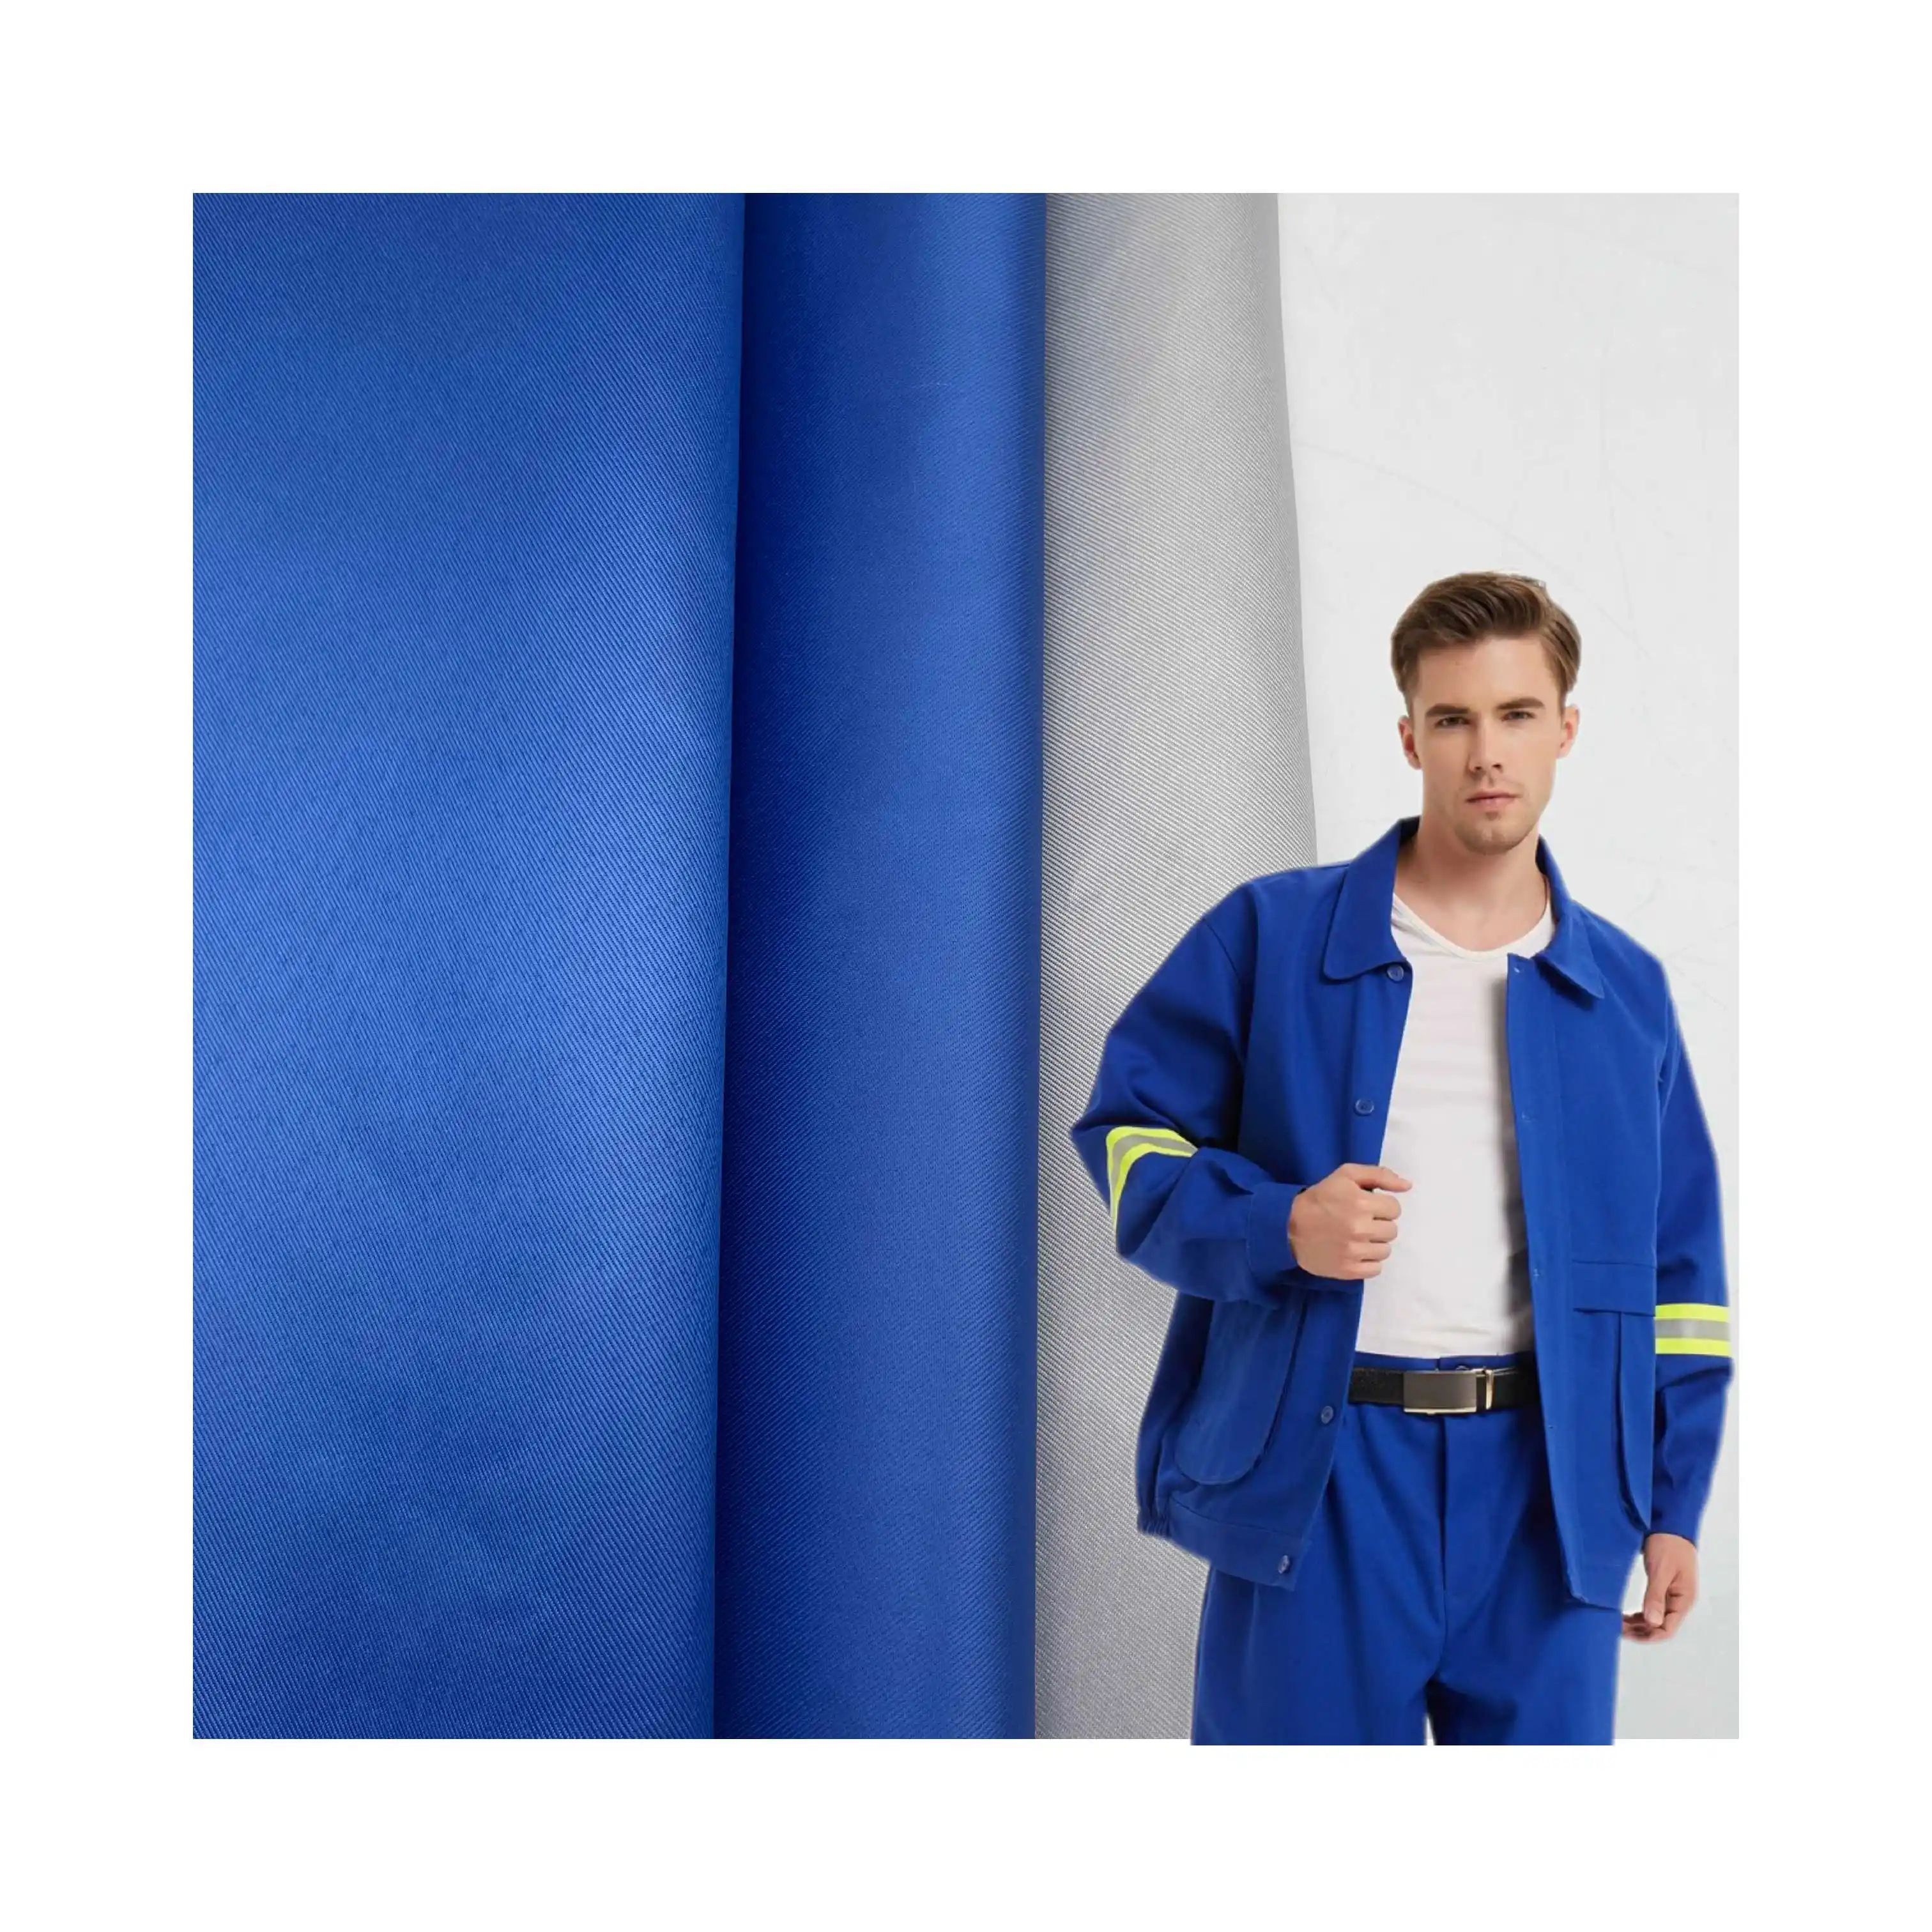 Bleu gris 100% Polyester imperméable ignifuge sergé tissé gabardine tissu vêtements de sécurité usage industriel